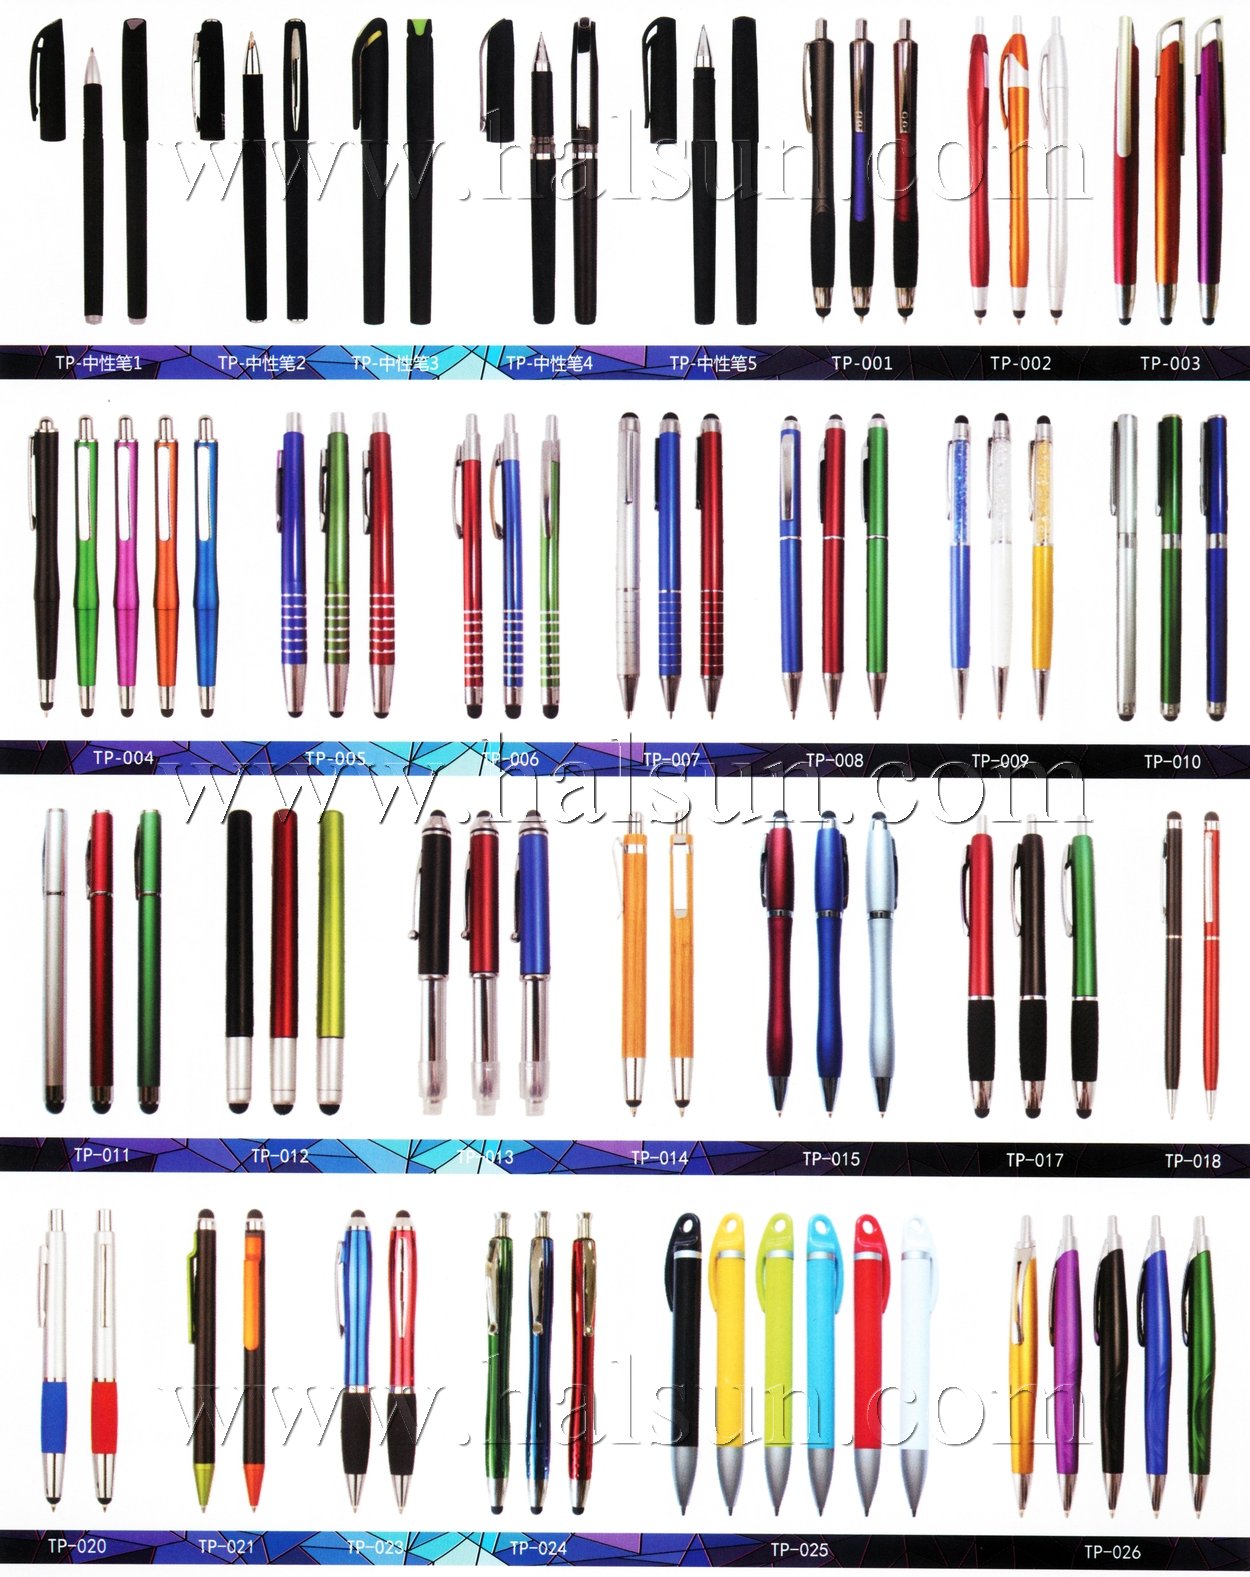 LED flashight stylus pens,2015_08_07_17_29_56